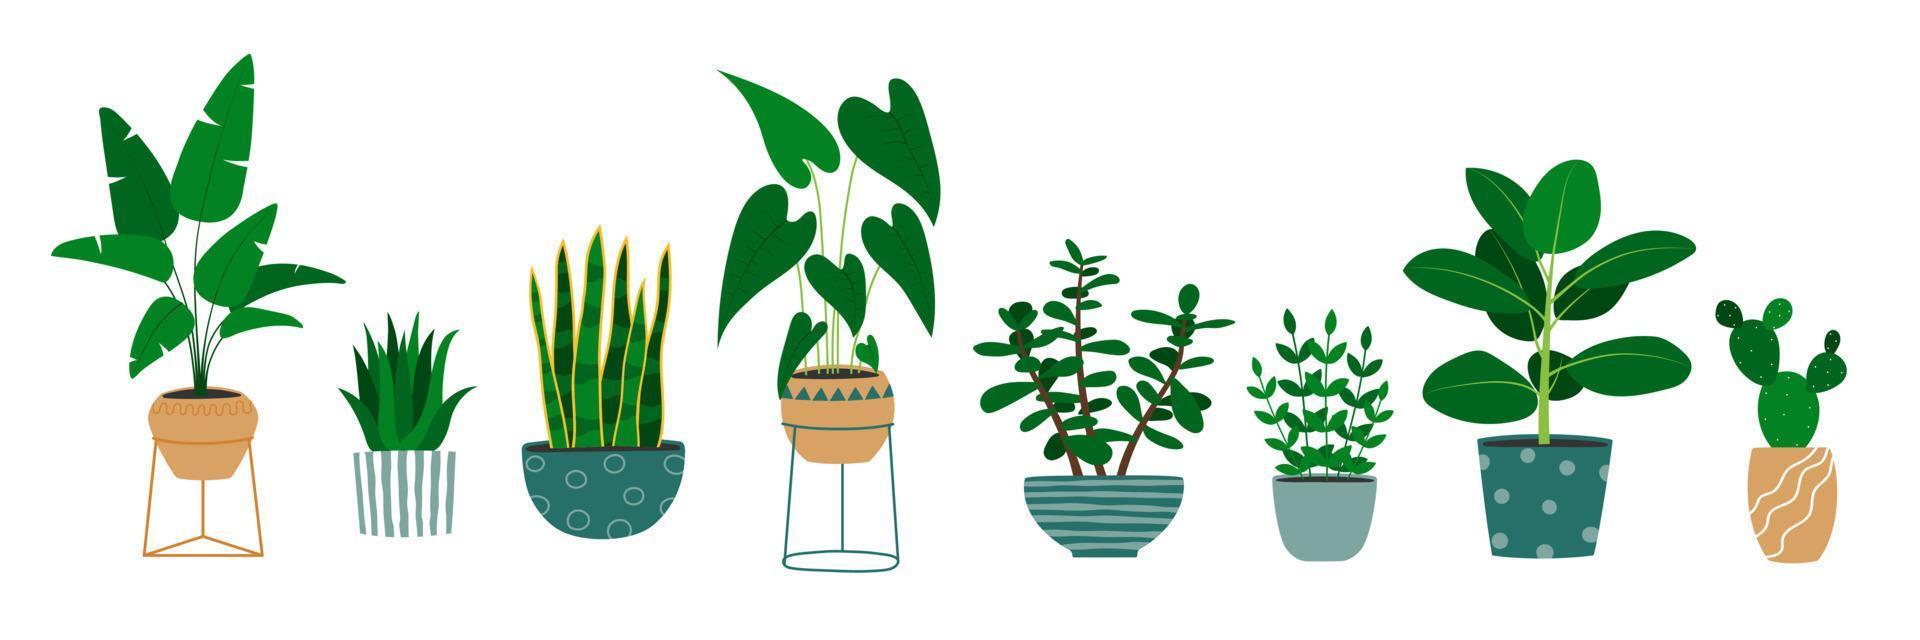 satz von handgezeichneten zimmerpflanzen in blumentöpfen. Alocasia-Pflanze, Kaktus, Monstera, Jade-Pflanze. vektor